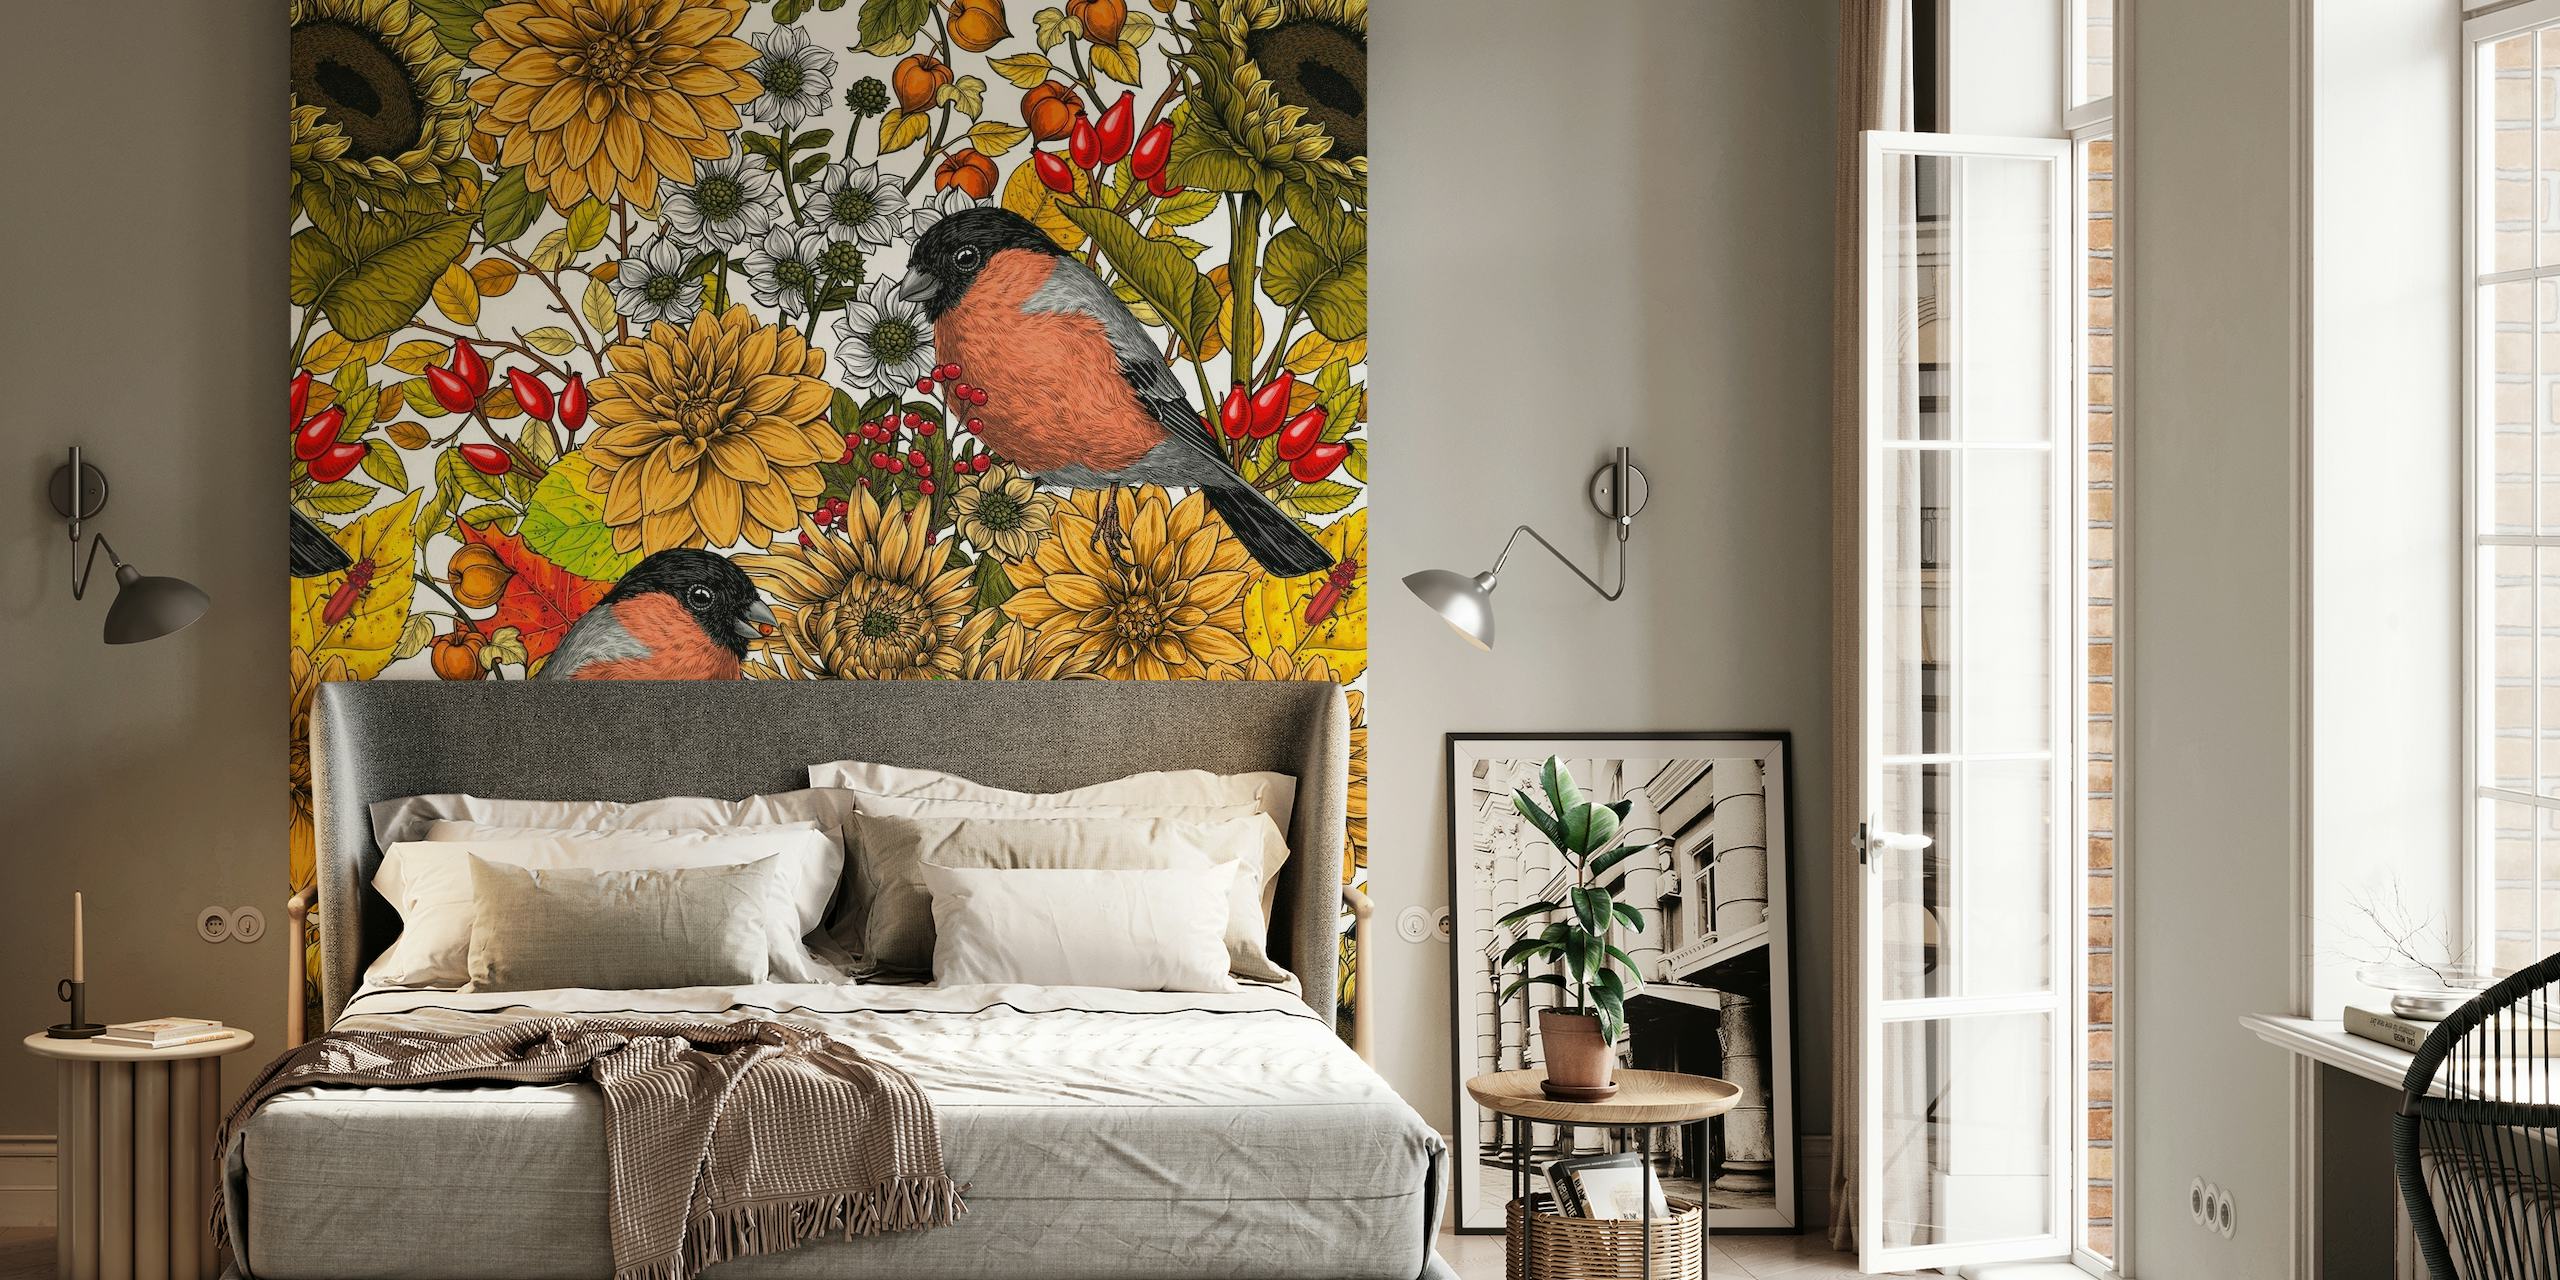 Vægmaleri med solsikker, morgenfruer og fugle, der repræsenterer efterårets havelandskab